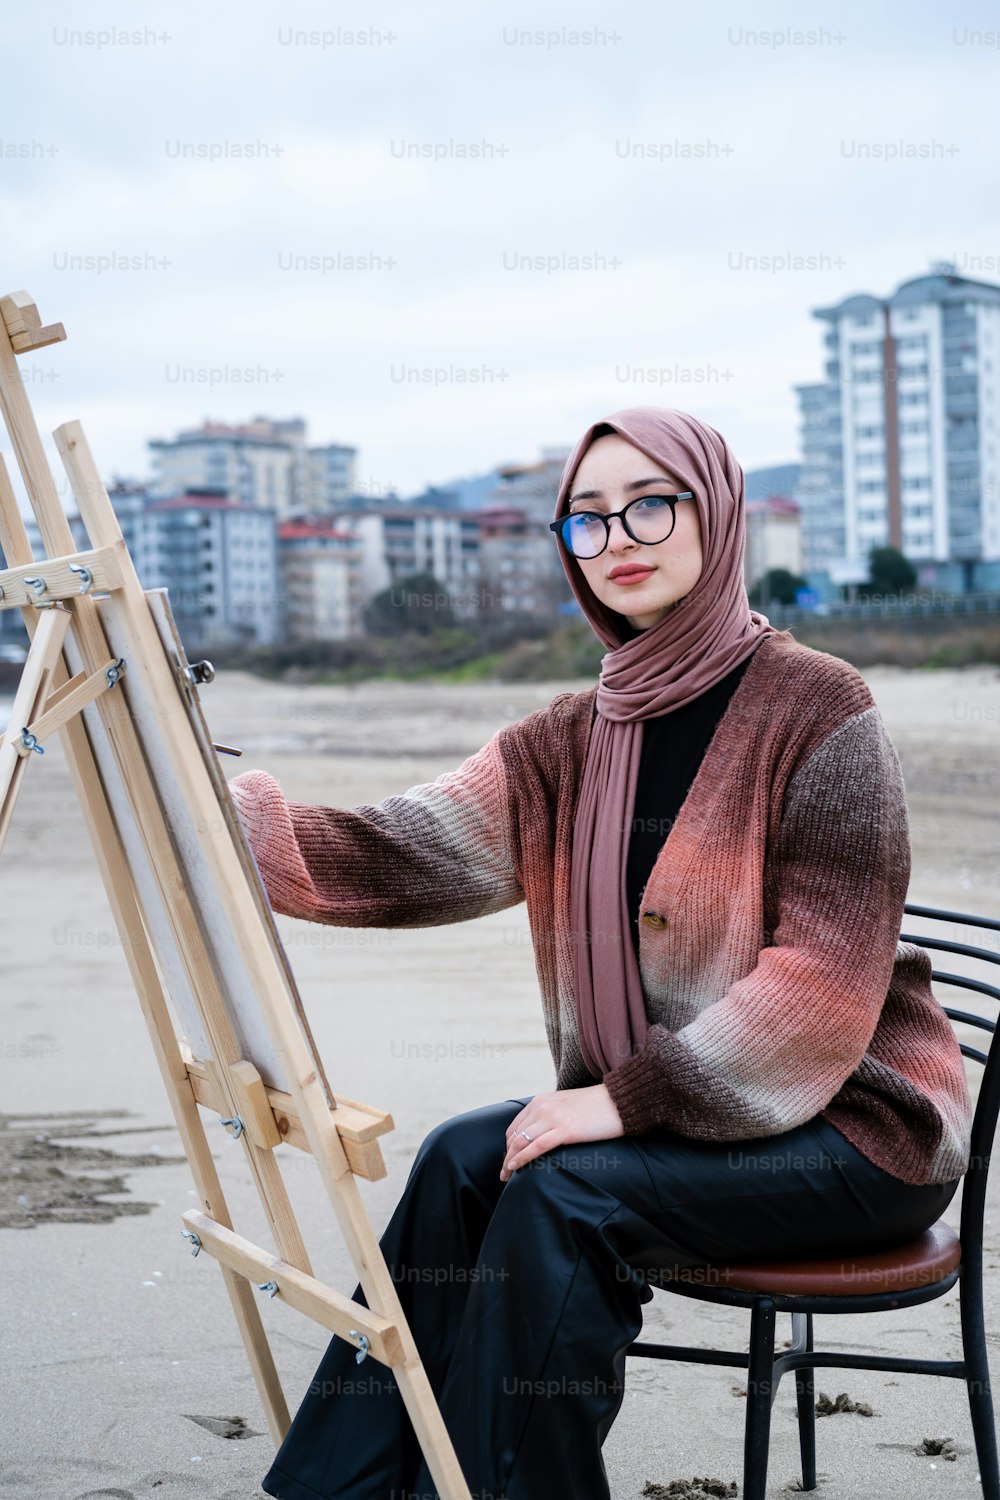 그림 이젤이 있��는 의자에 앉아 있는 히잡을 쓴 여자